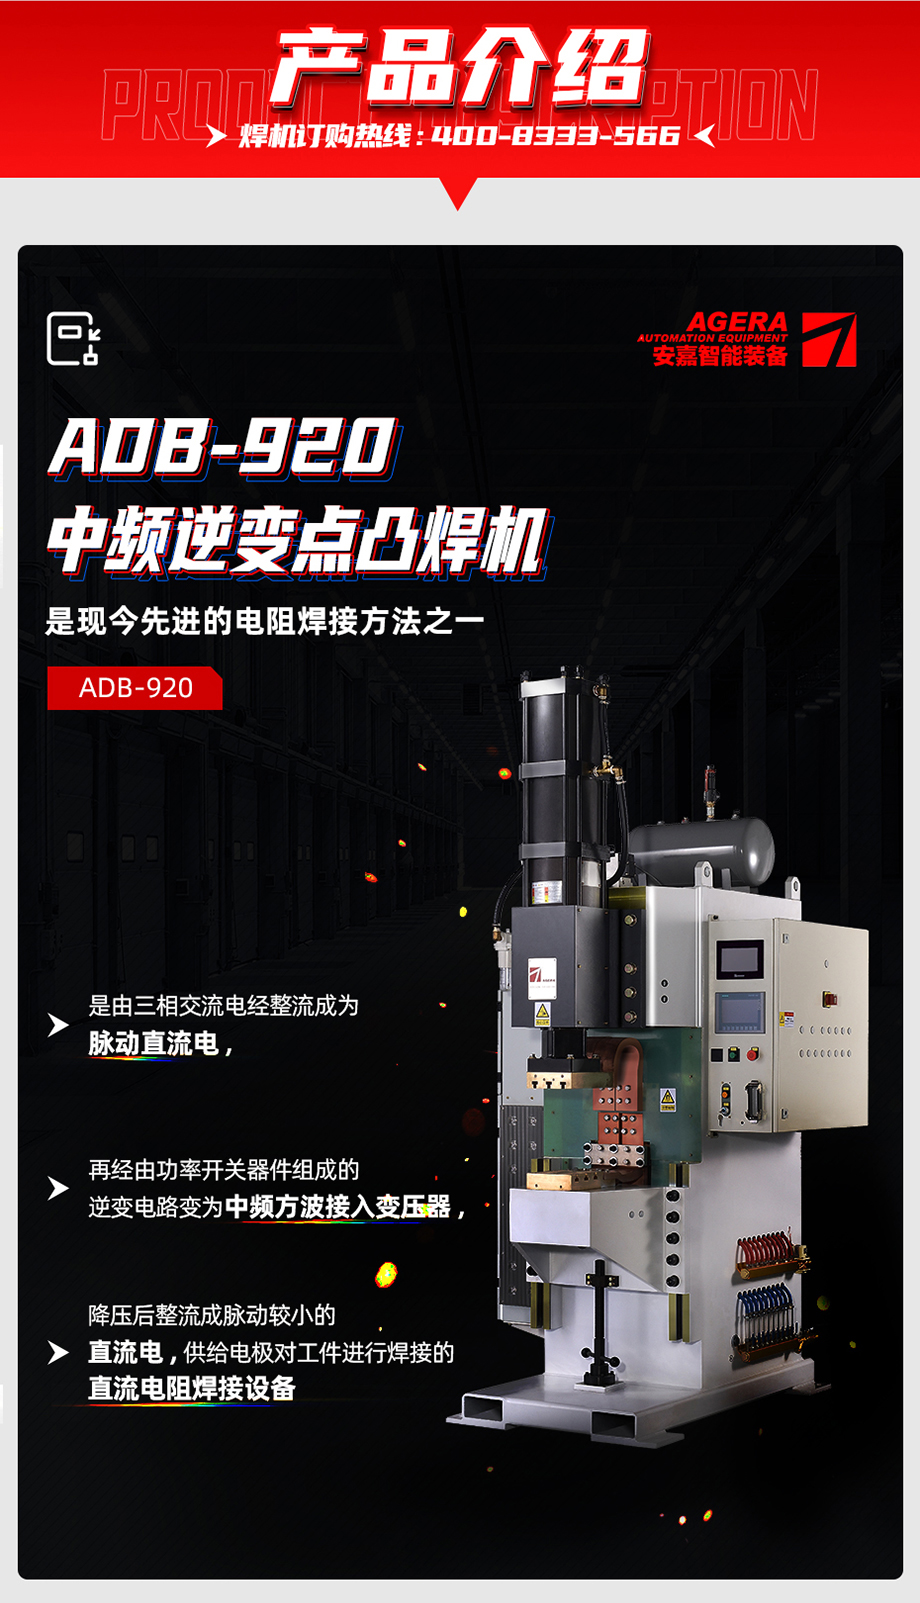 ADB-920中频点焊机产品介绍